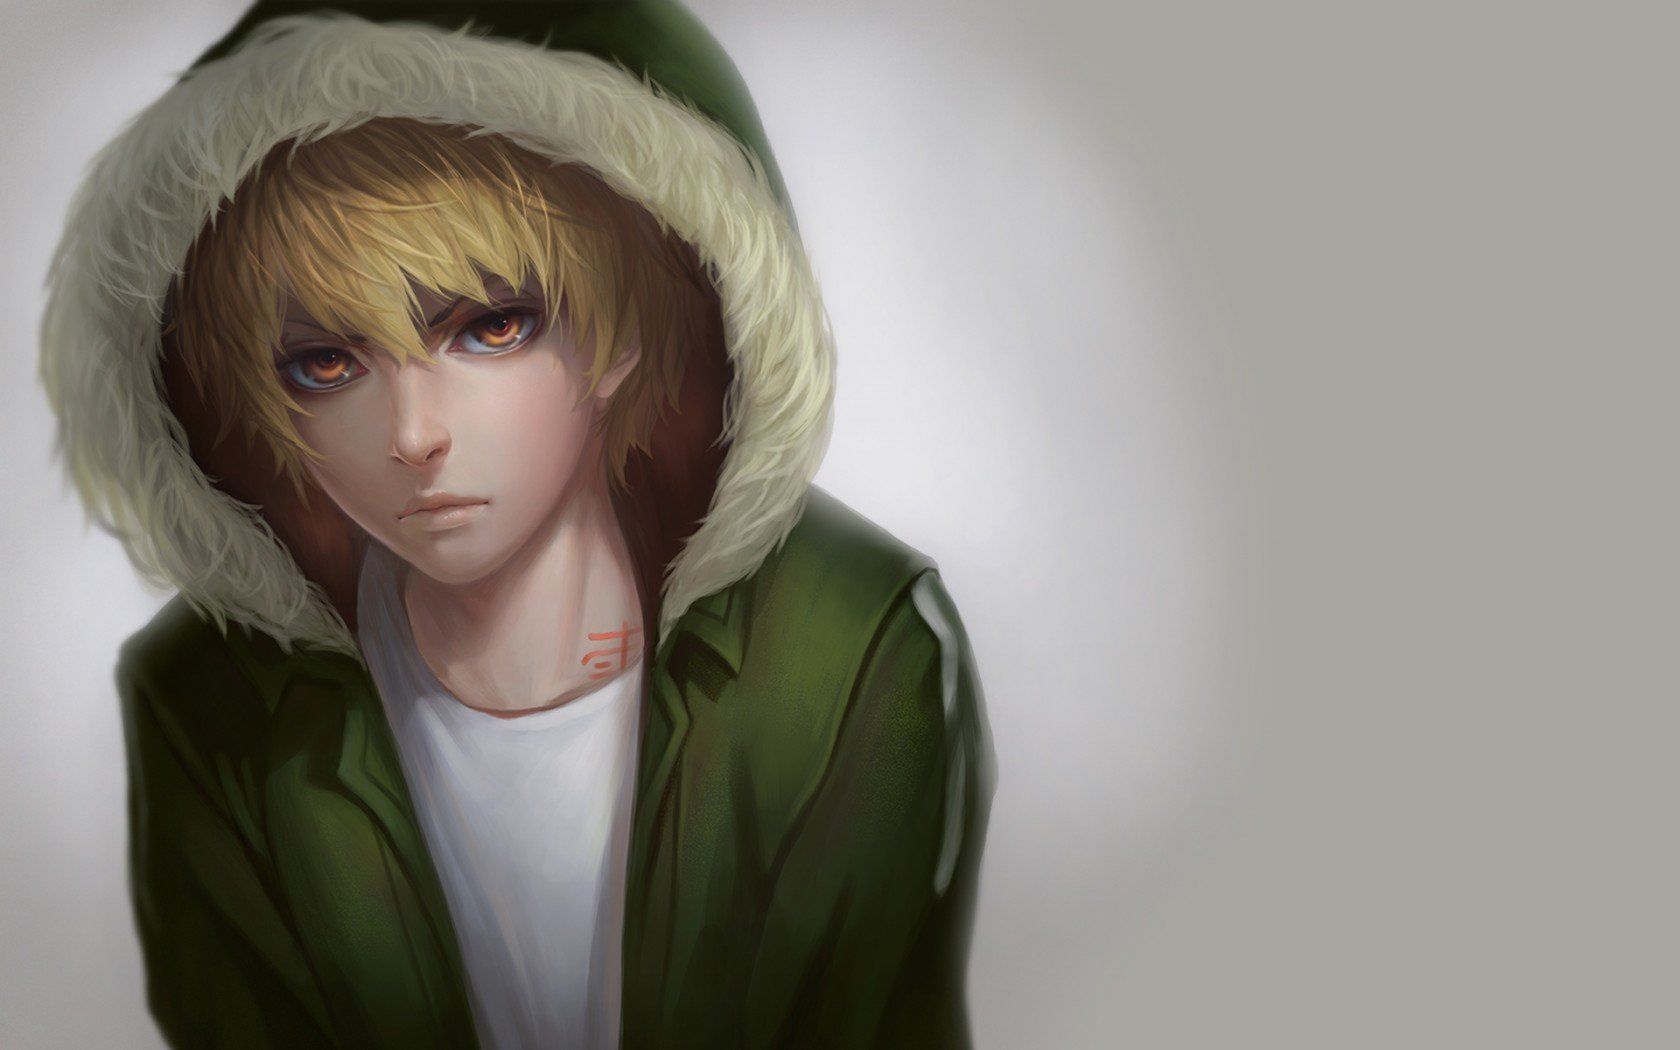 #anime, #Blond, #boy, #eyes, #green, #red, #hair